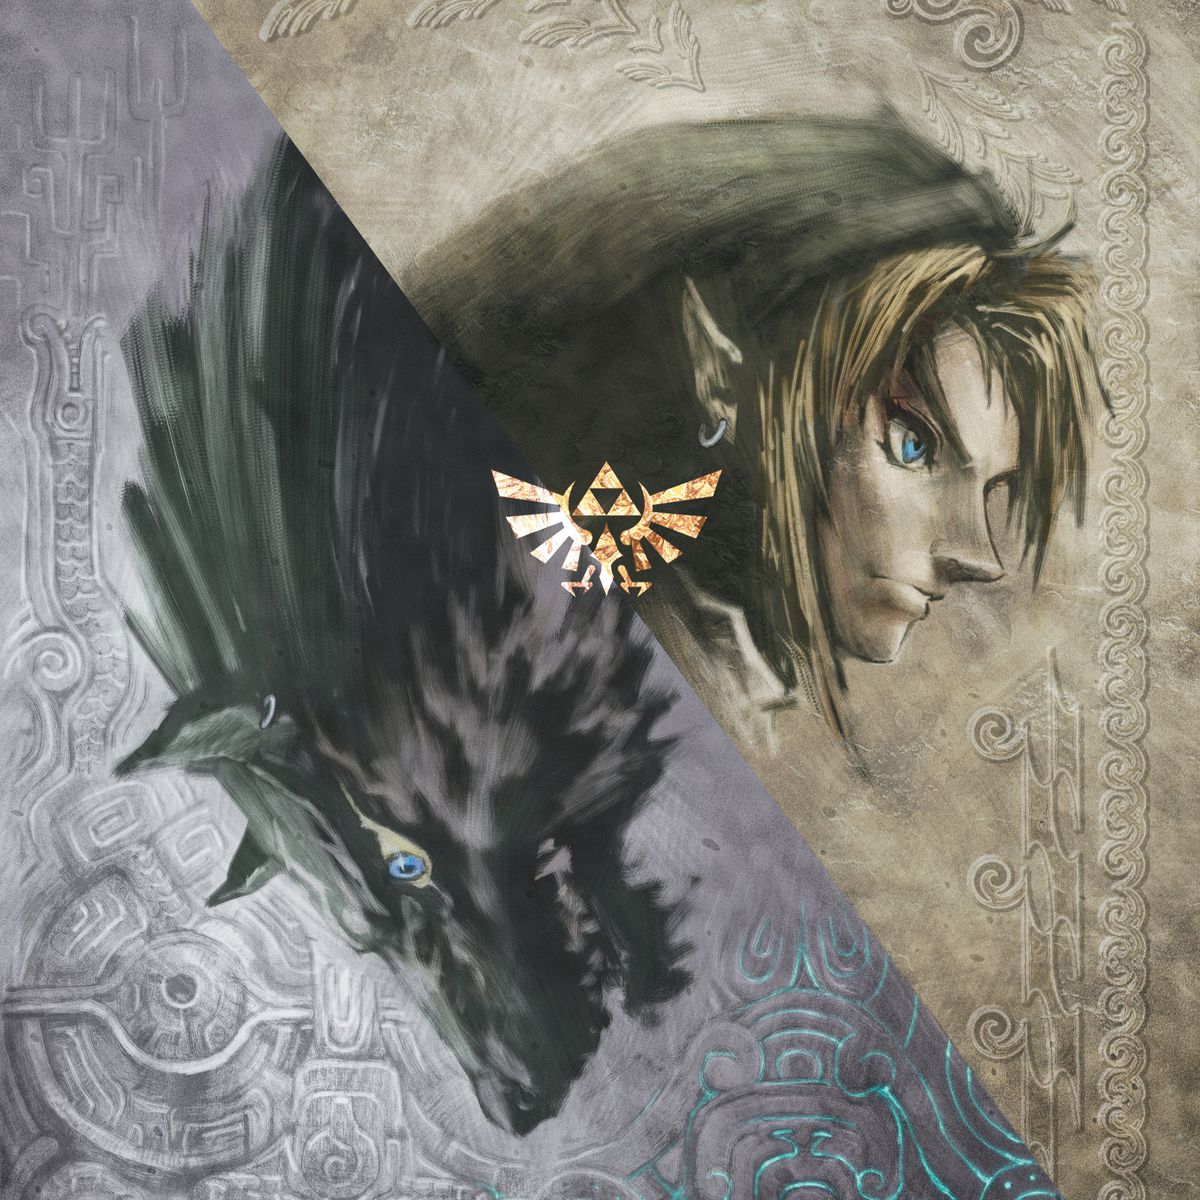 Obra de arte que muestra la cabeza de Link y la de un lobo feroz divididas por una línea diagonal con el logotipo de la Trifuerza en el centro.